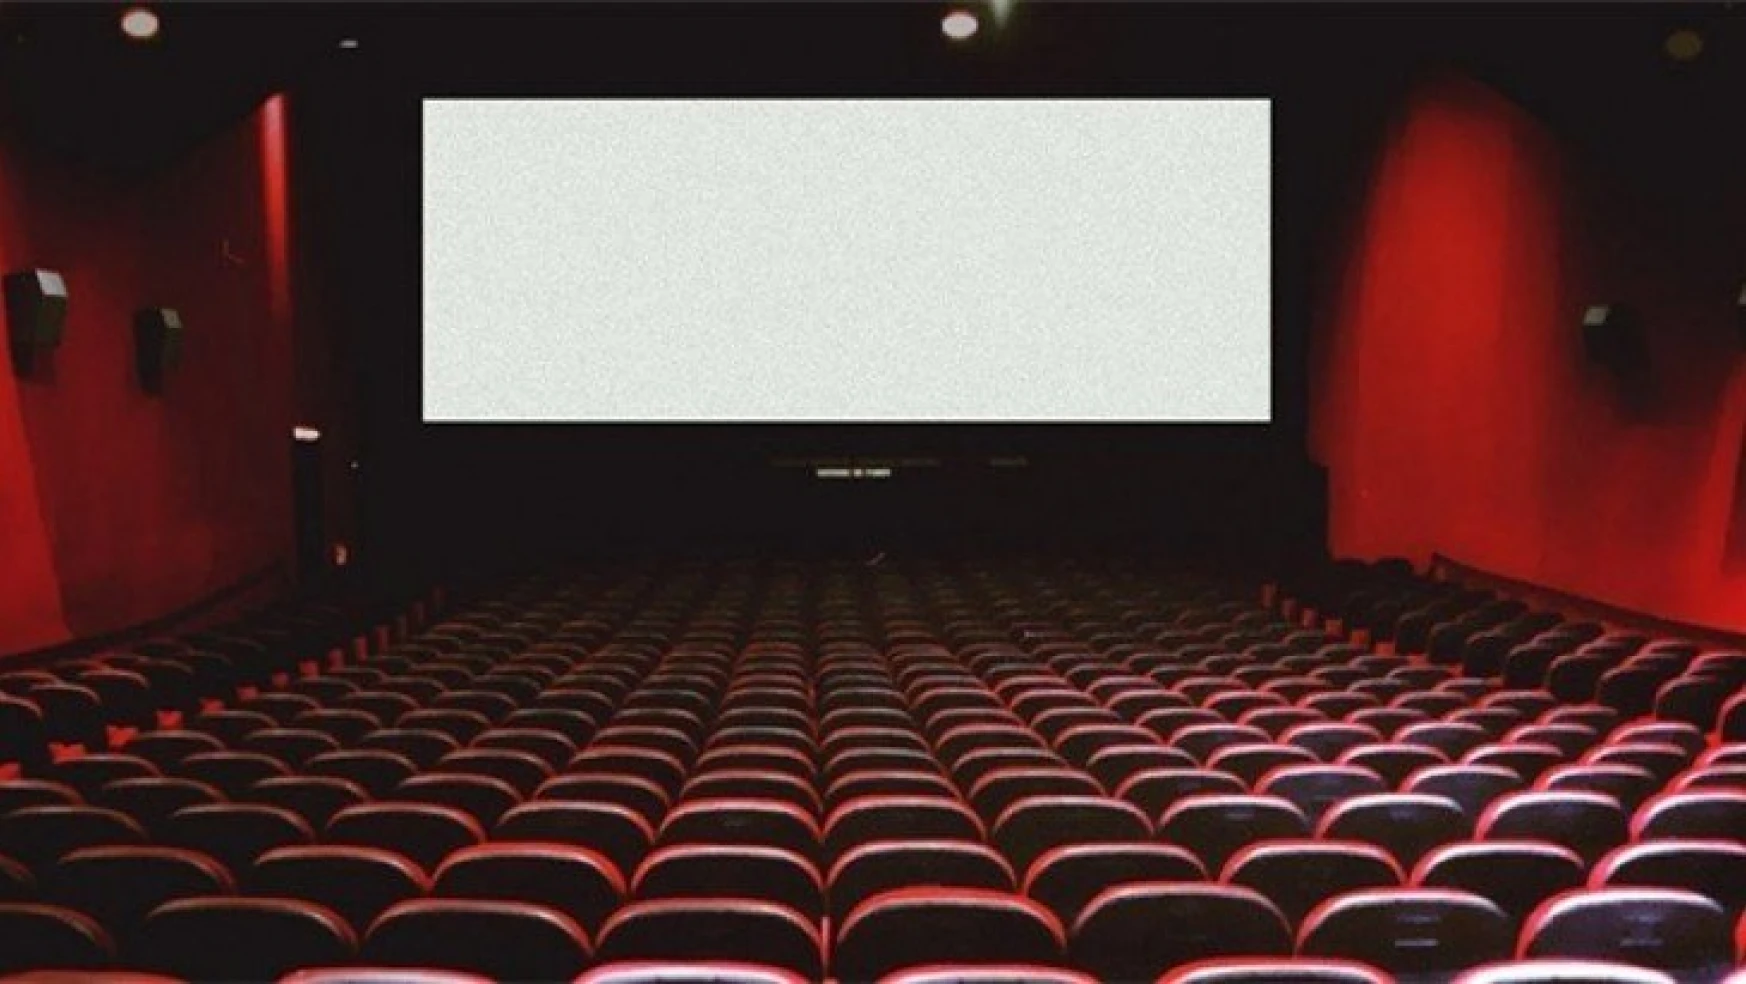 Ülkemizde sinema salonlarının sayısı yüzde 4,5 azaldı.